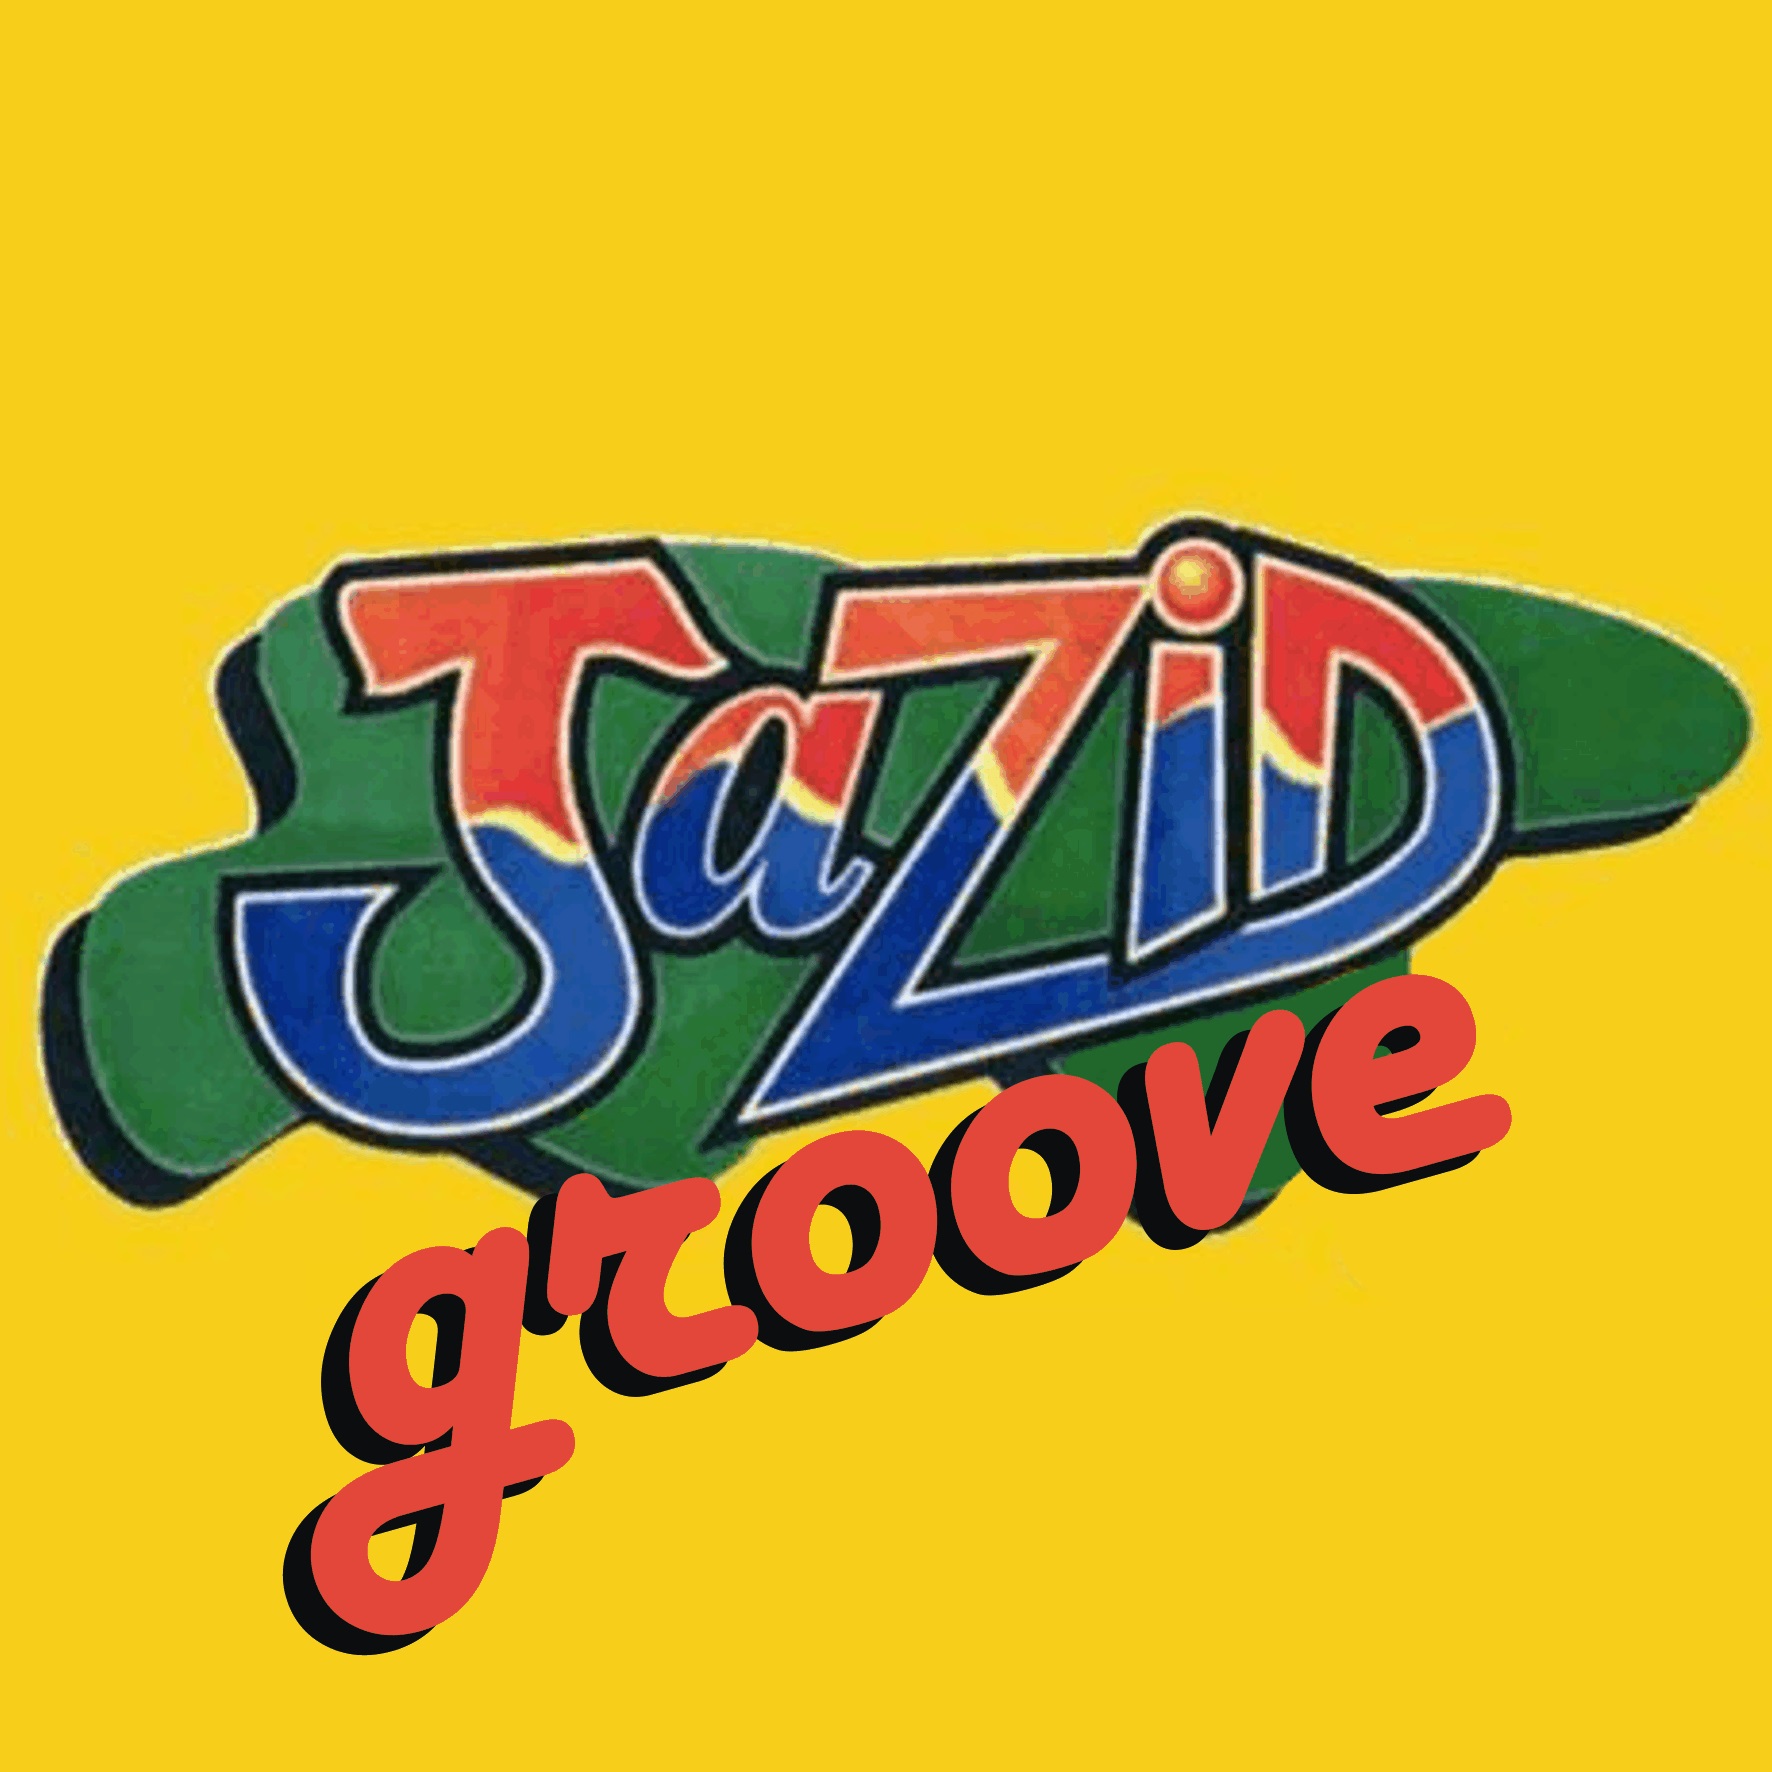 Jazid Groove 39